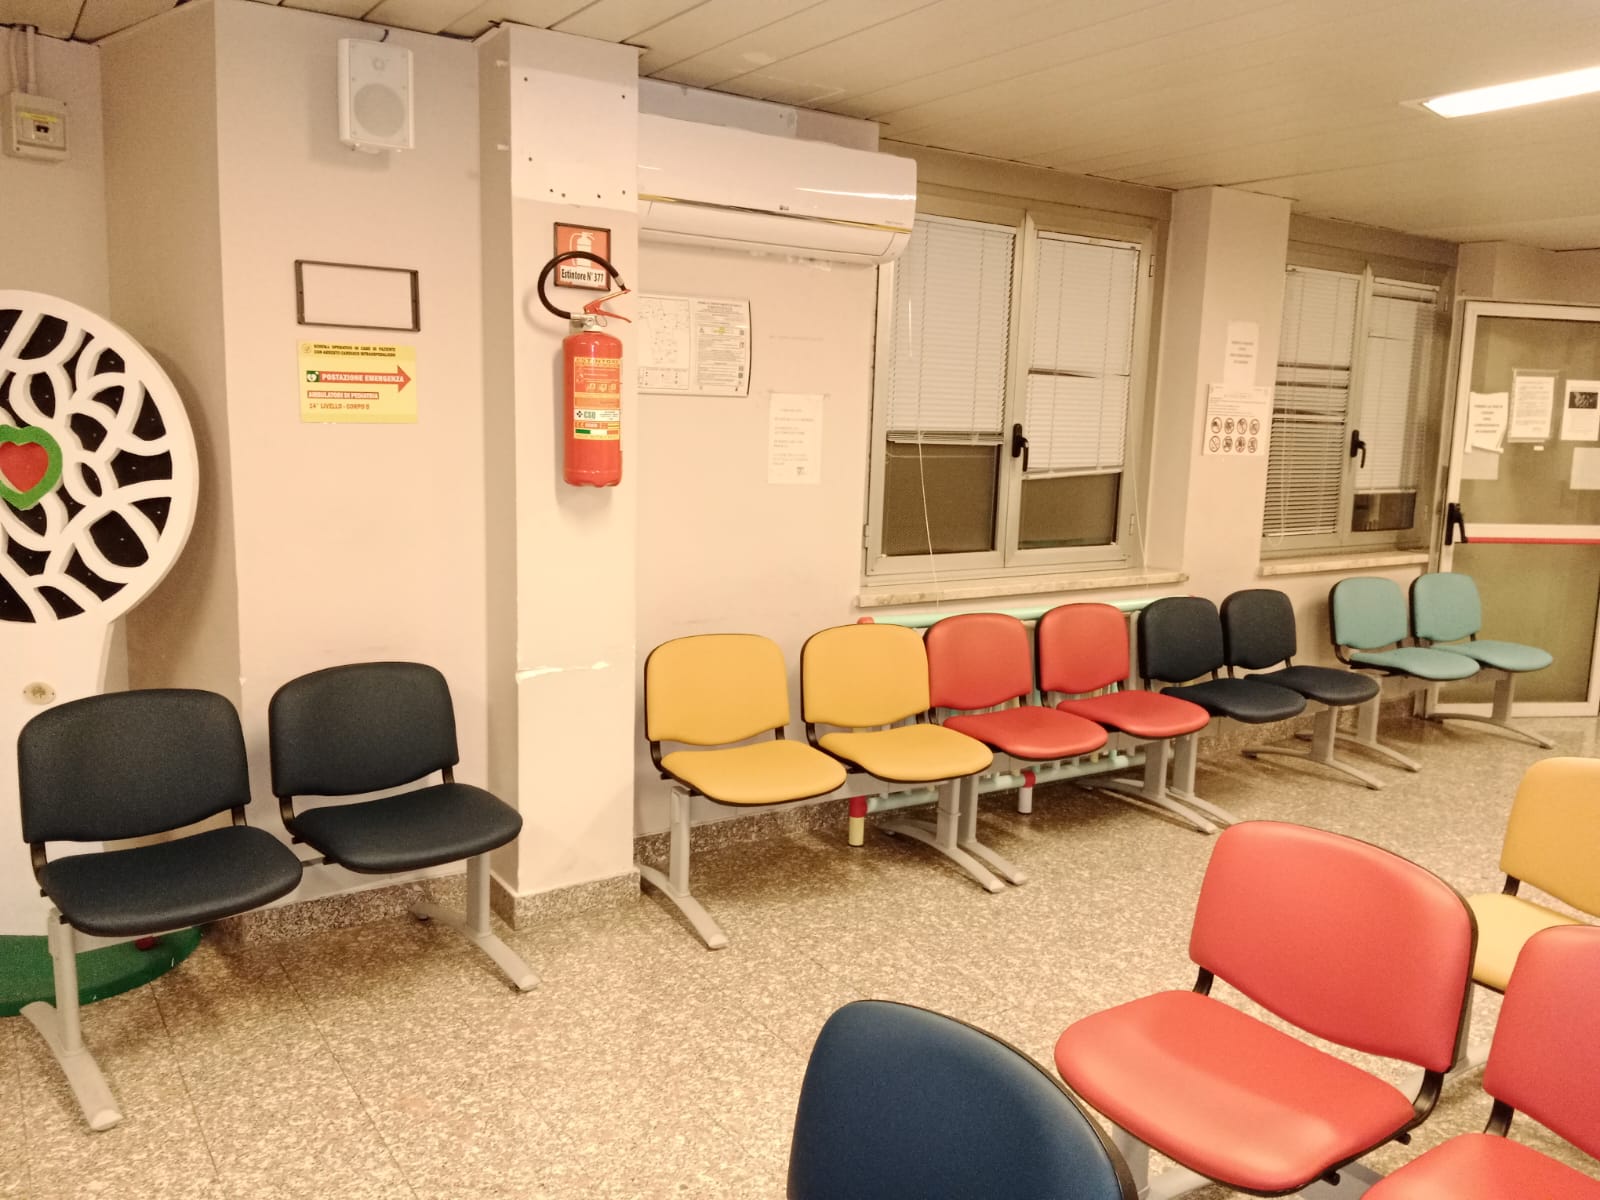 Inaugurazione della rinnovata sala d'attesa per i pazienti della Clinica oncologica dell'ospedale di Chieti